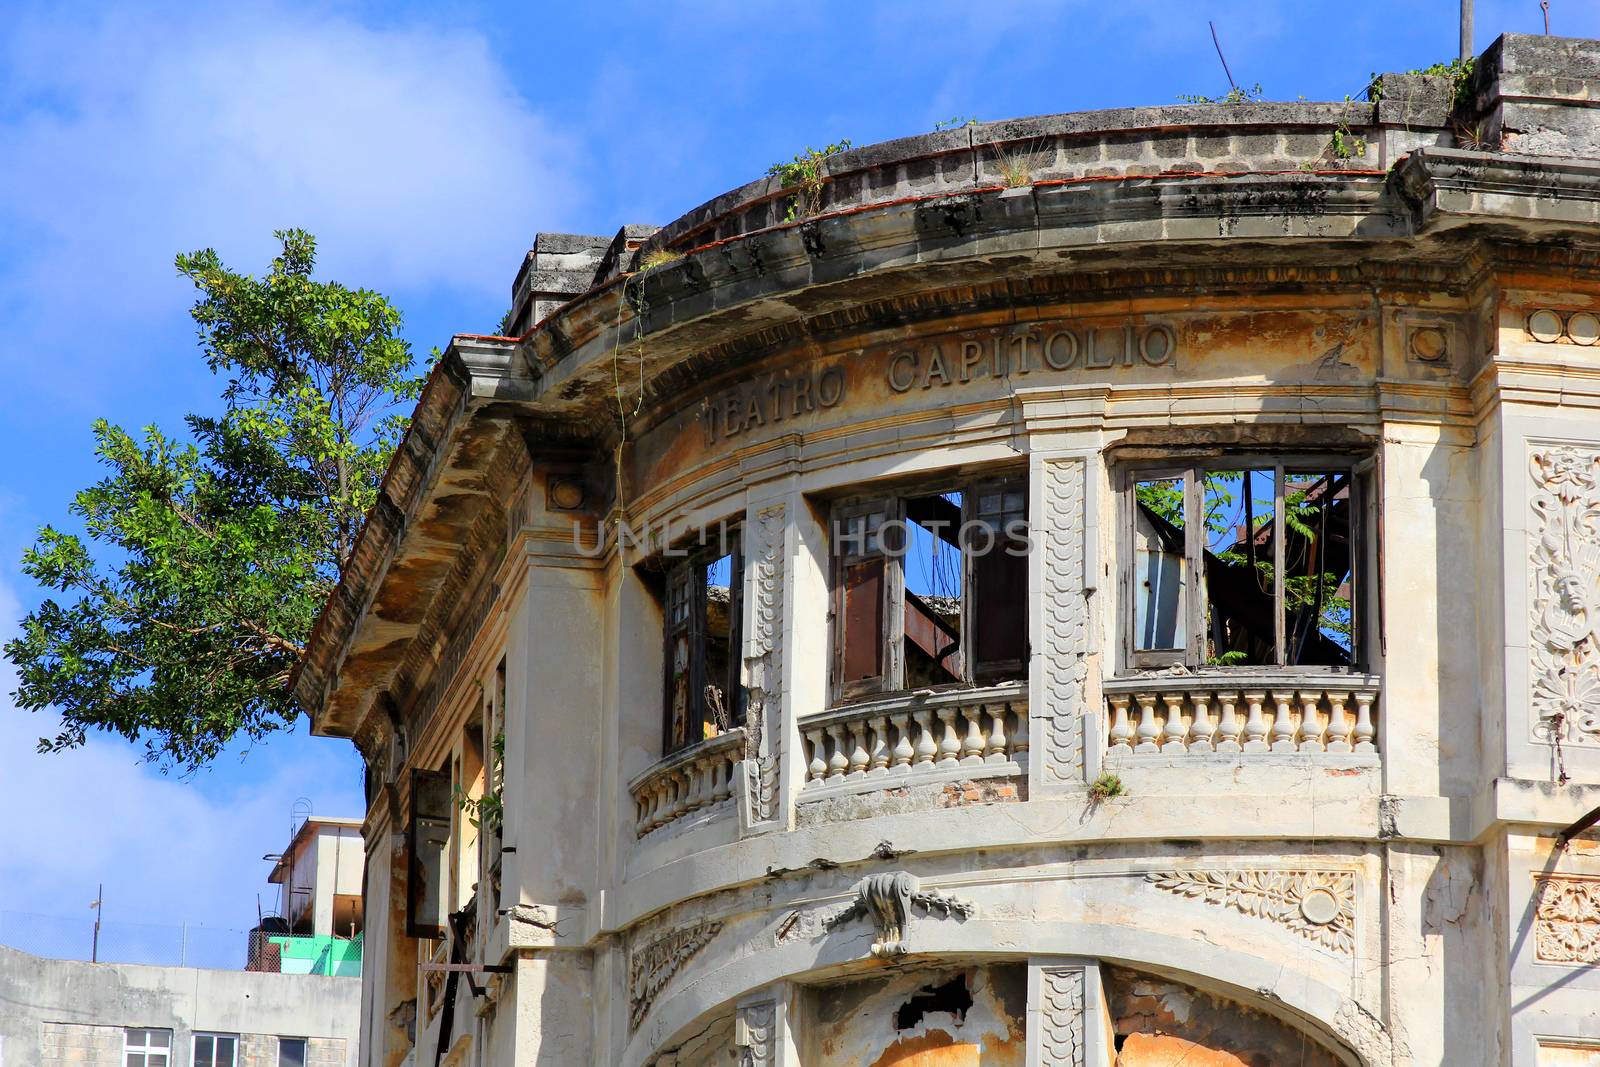 Teatro Capitolio.Deteriorated building in Old Havana